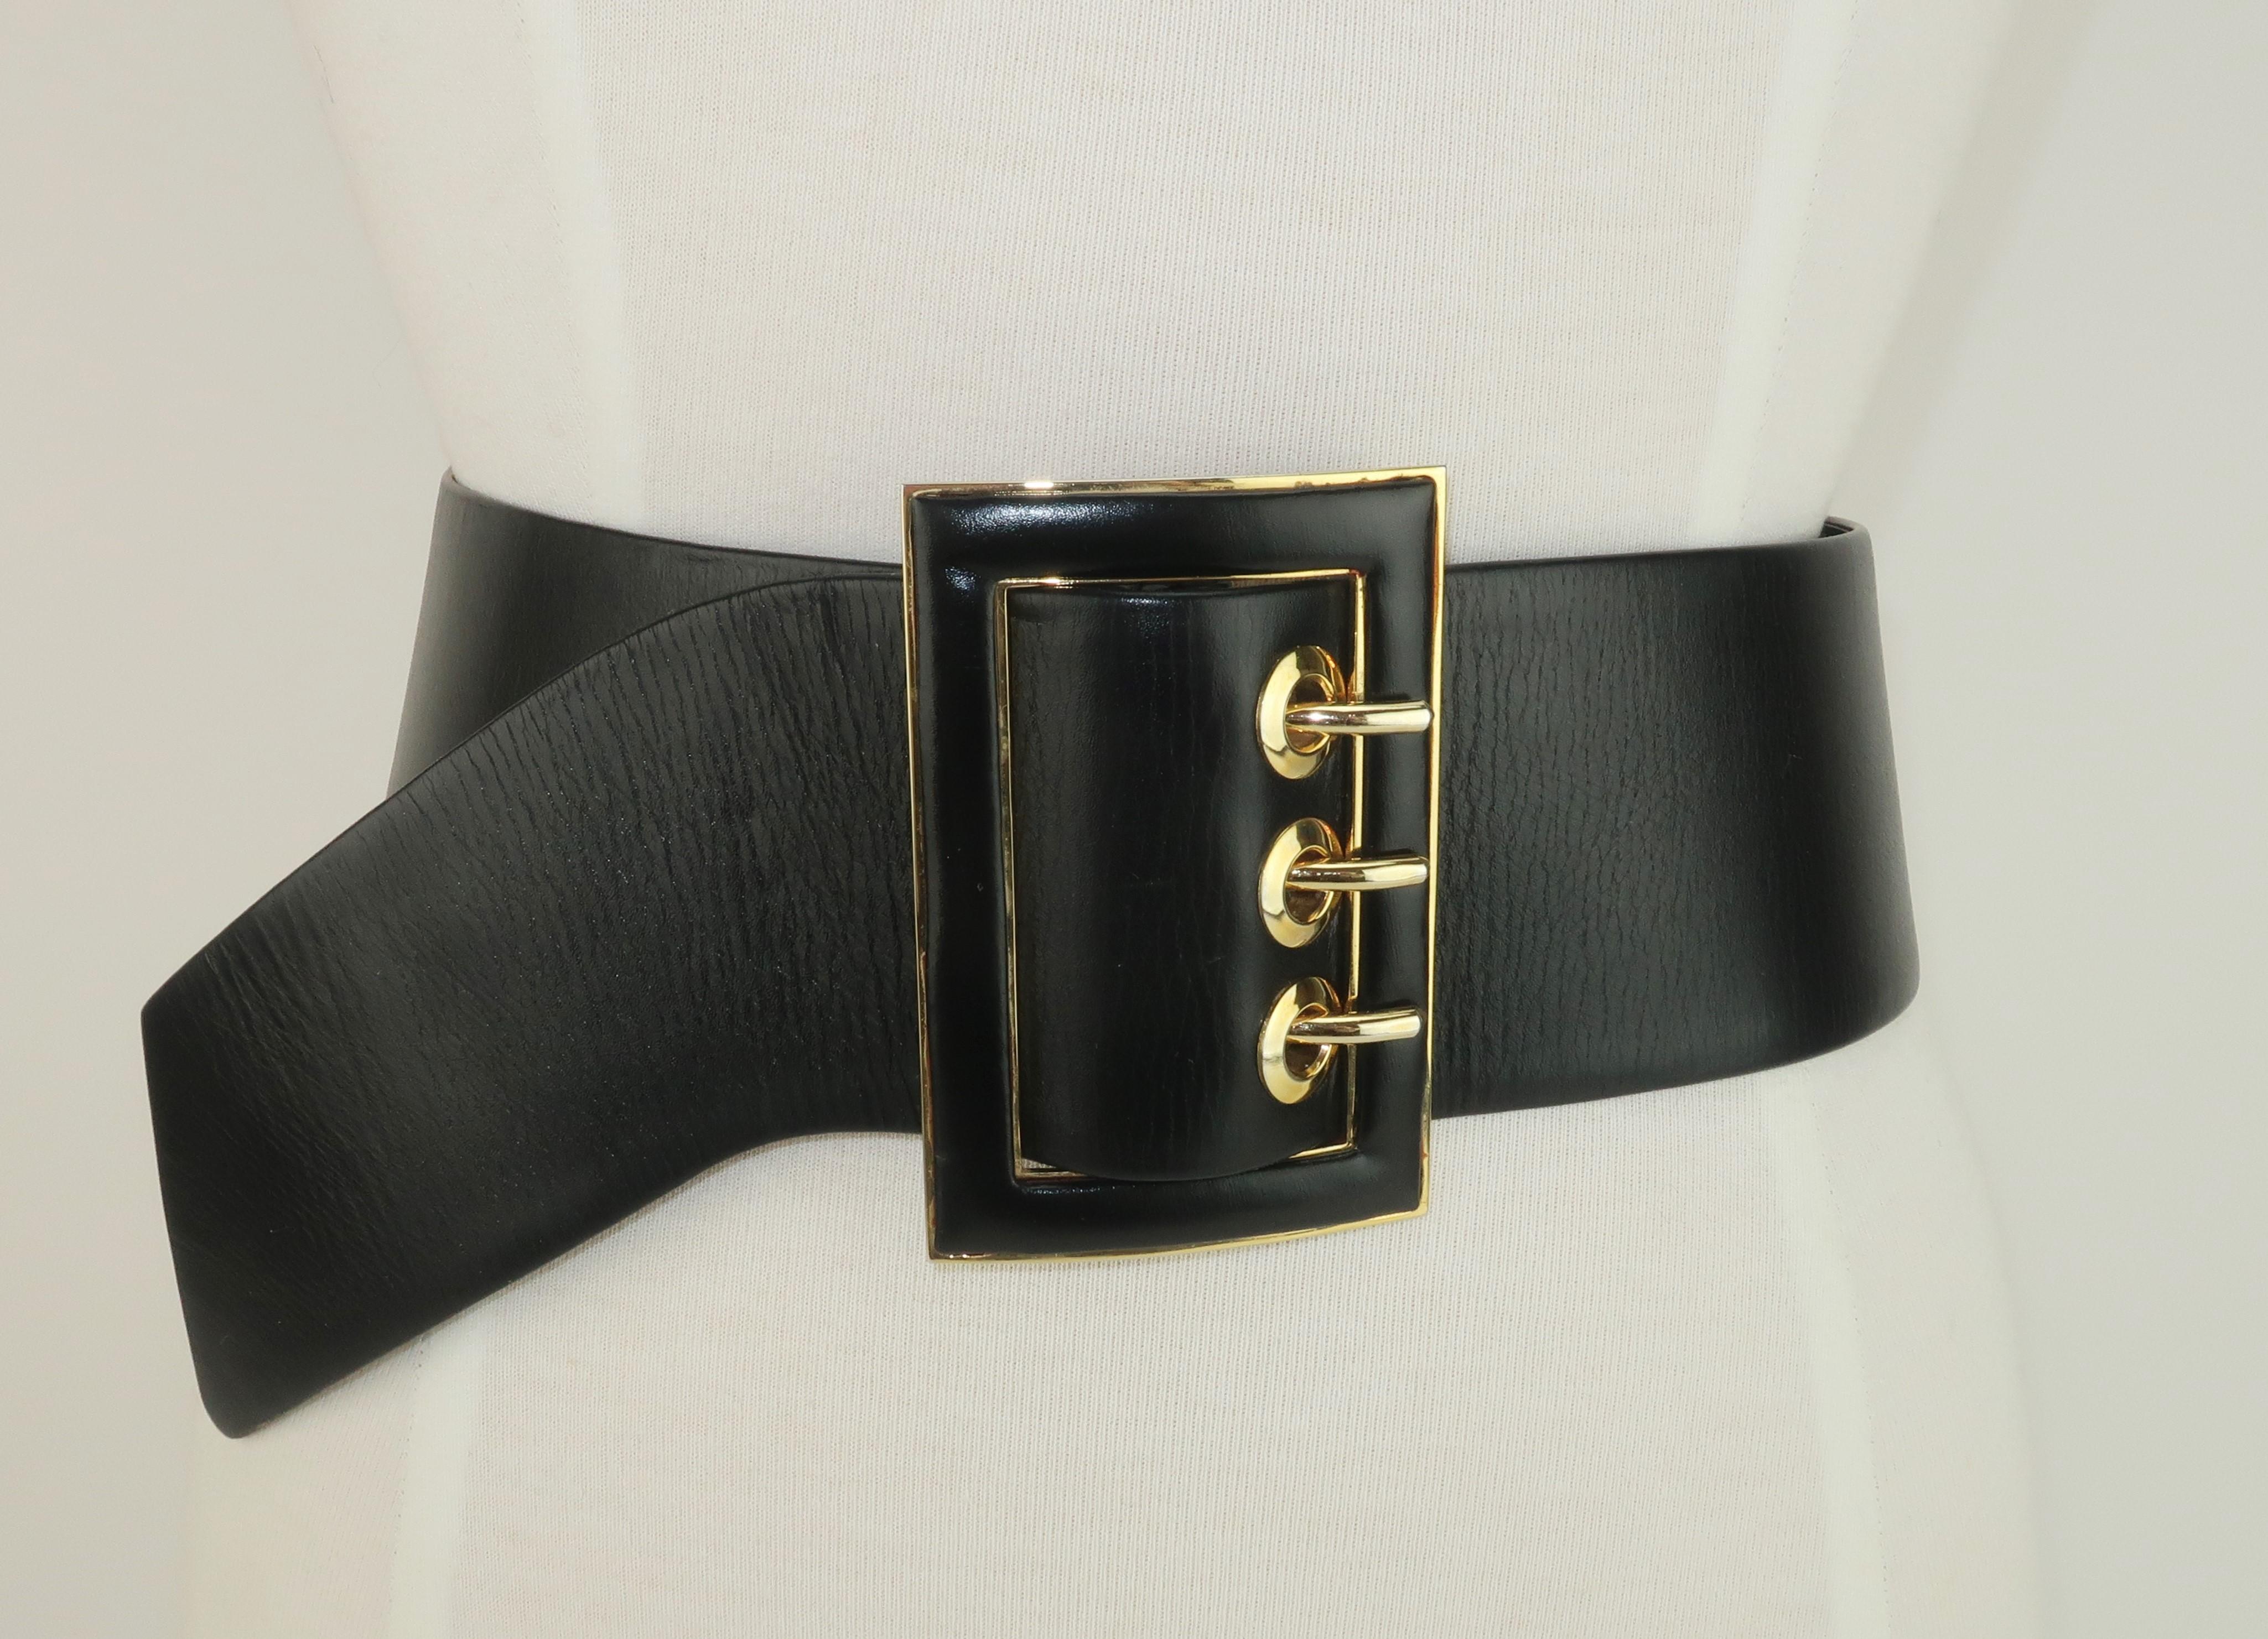 Schwarzer Ledergürtel von Judith Leiber mit vergoldeten Beschlägen und einem leicht verstellbaren Stil.  Das einzigartige Design hat einen gebogenen 